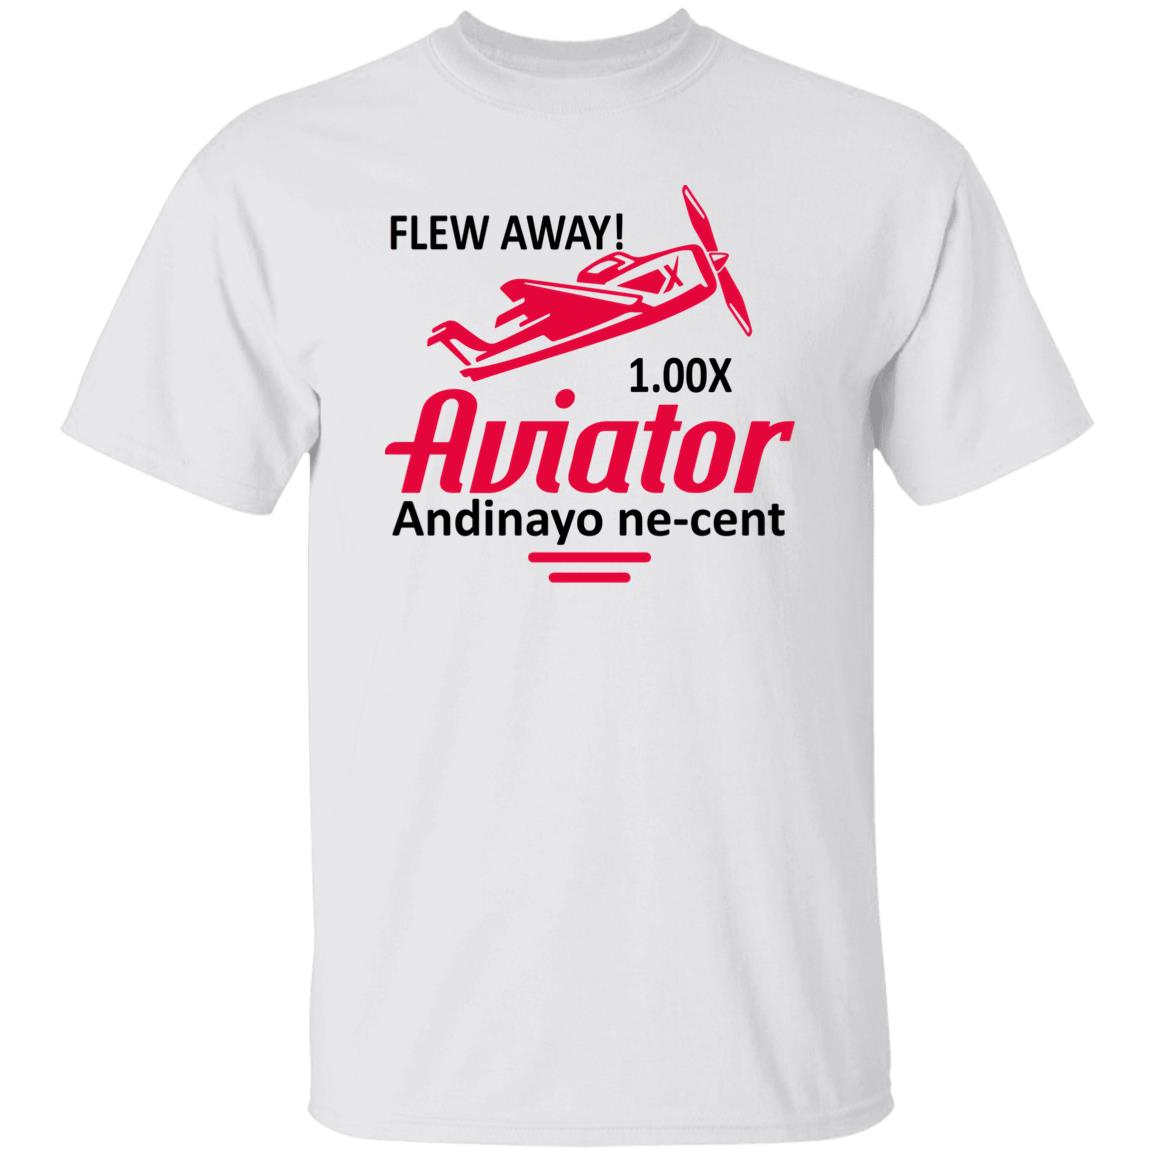 Flew Away Aviator Andinayo Ne-Cent Shirt